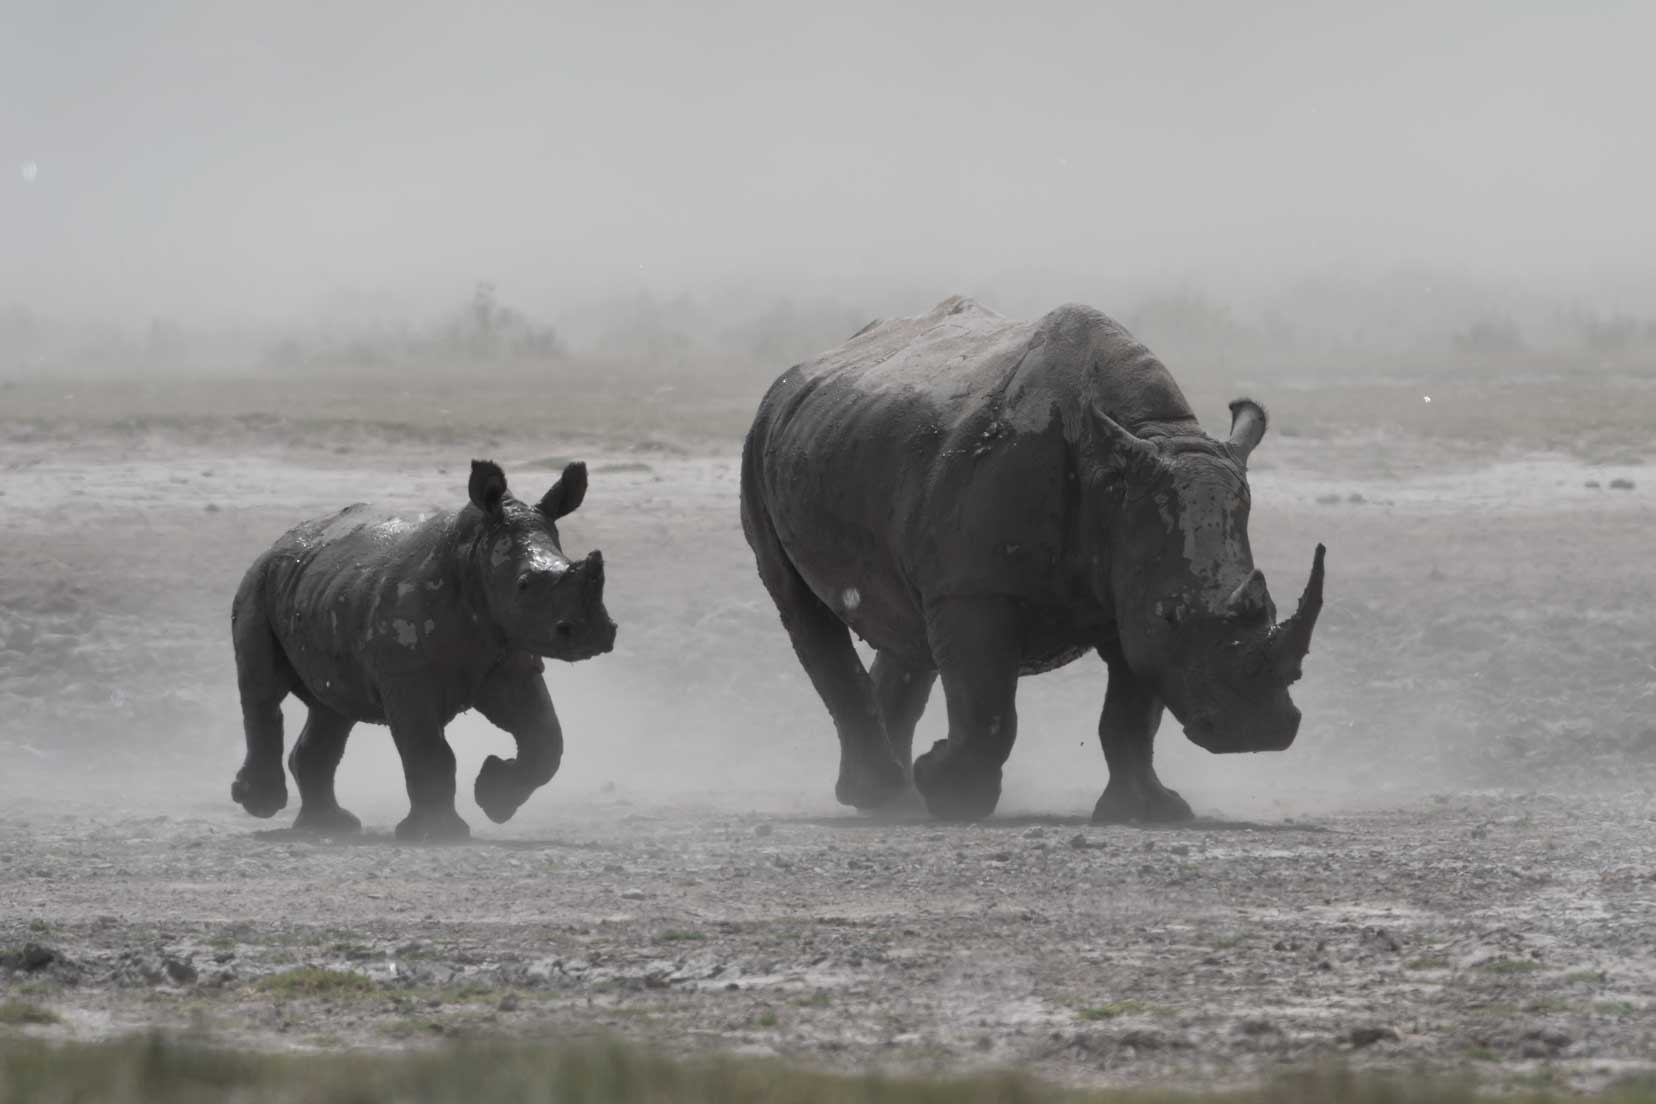 Mum and baby rhino at Khama Rhino Sanctuary